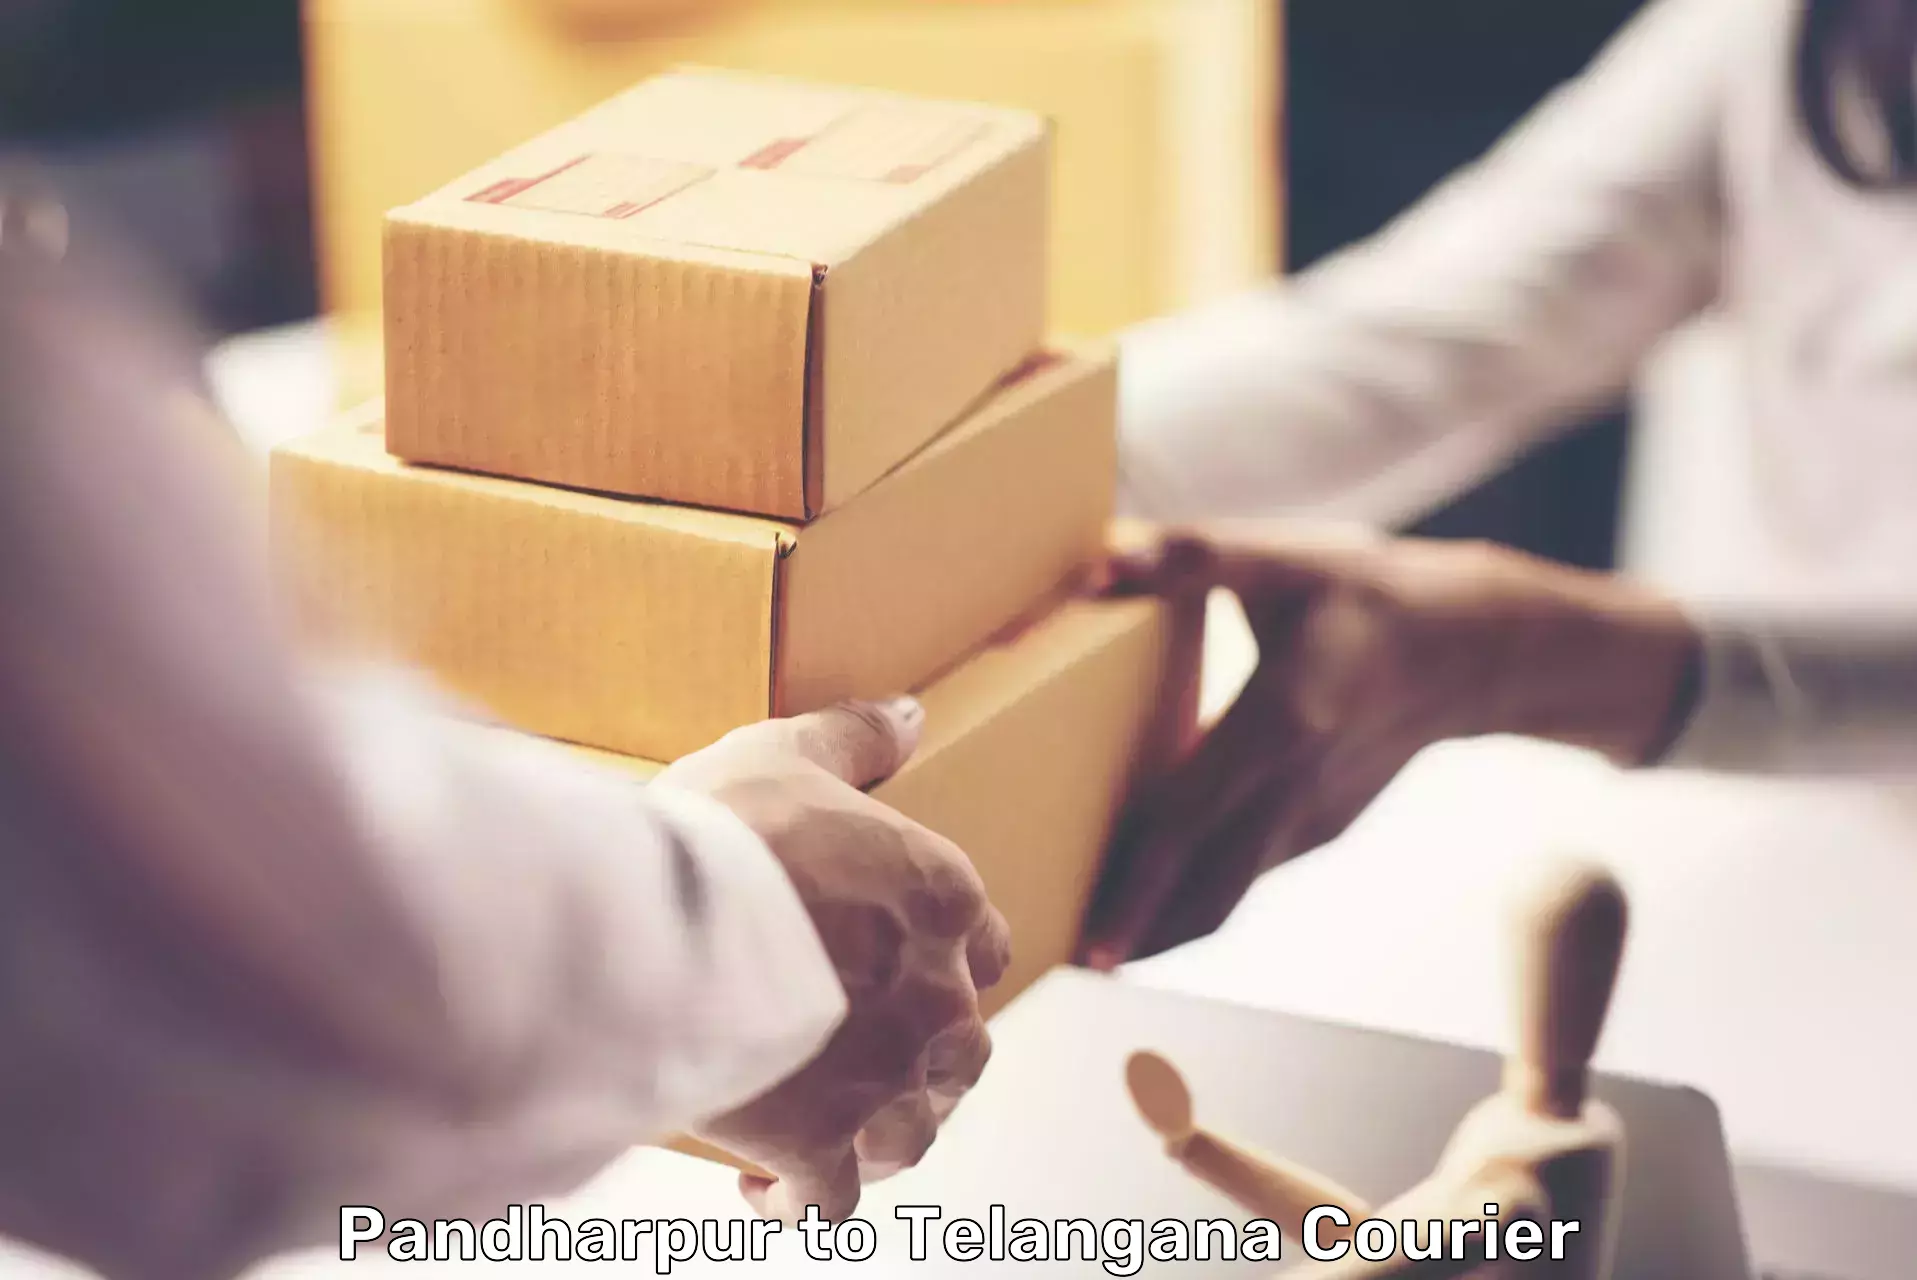 Professional courier handling Pandharpur to Kosgi